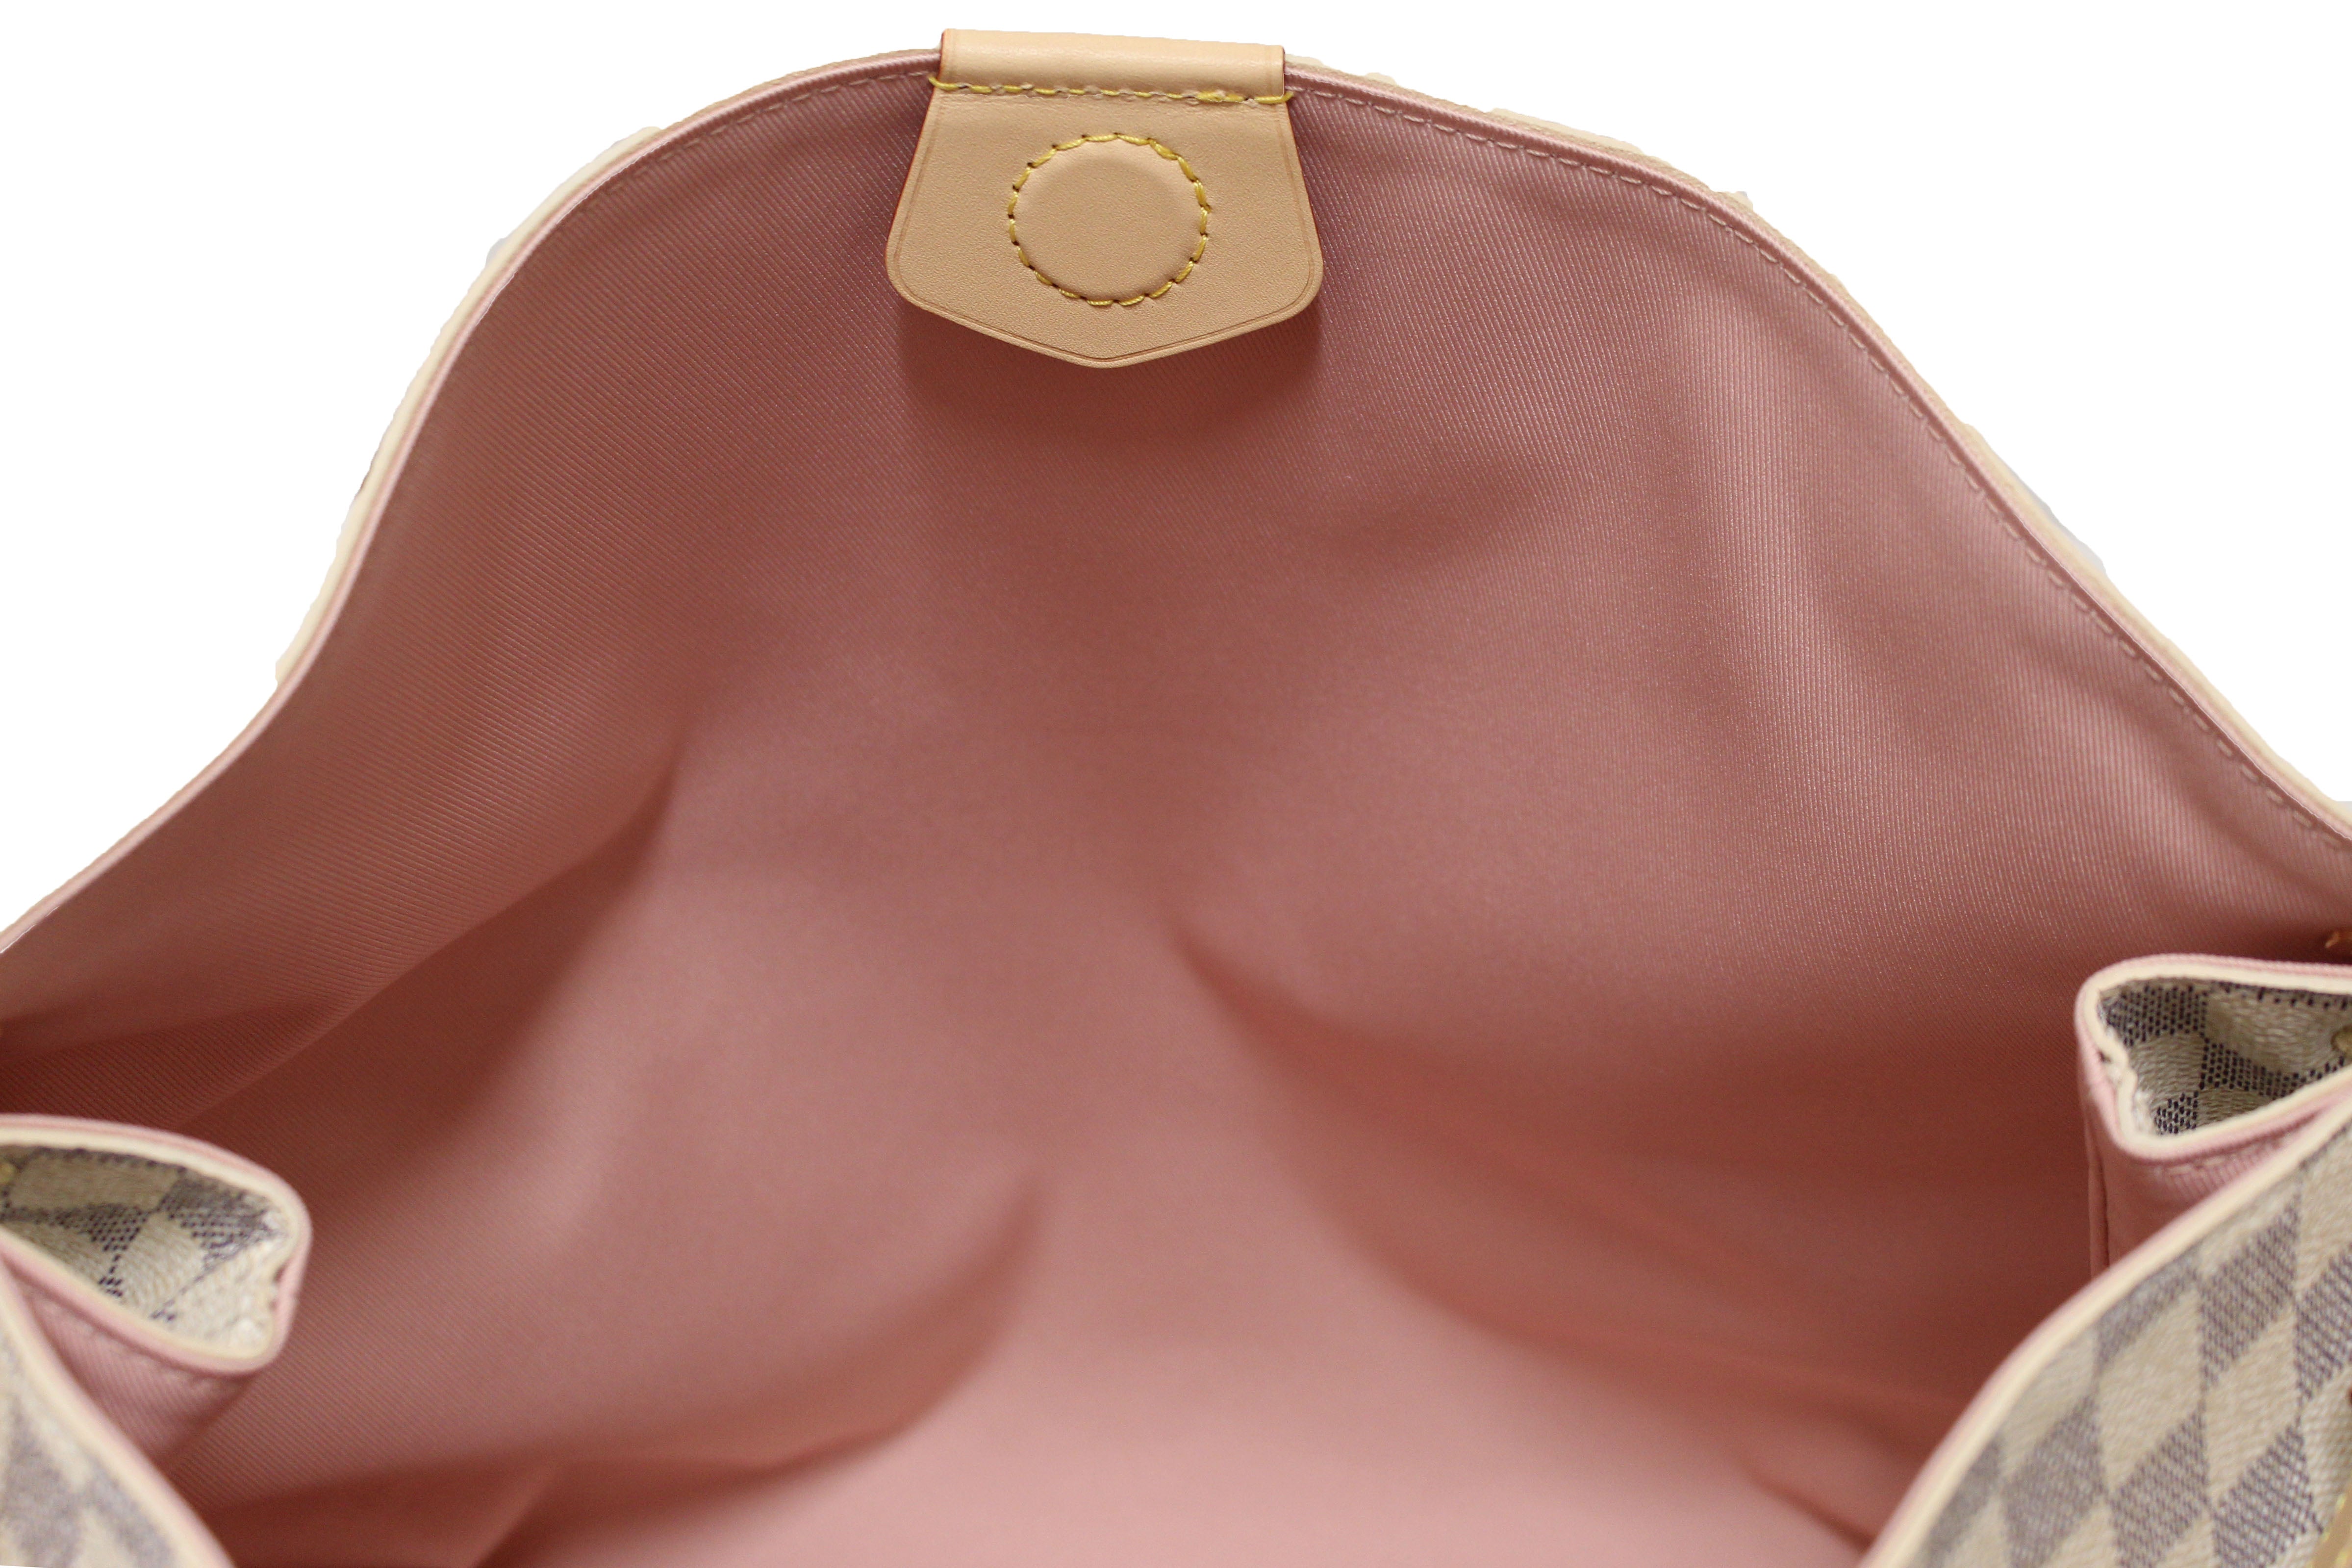 Louis Vuitton Damier Azur Graceful MM Hobo Shoulder Bag – Italy Station